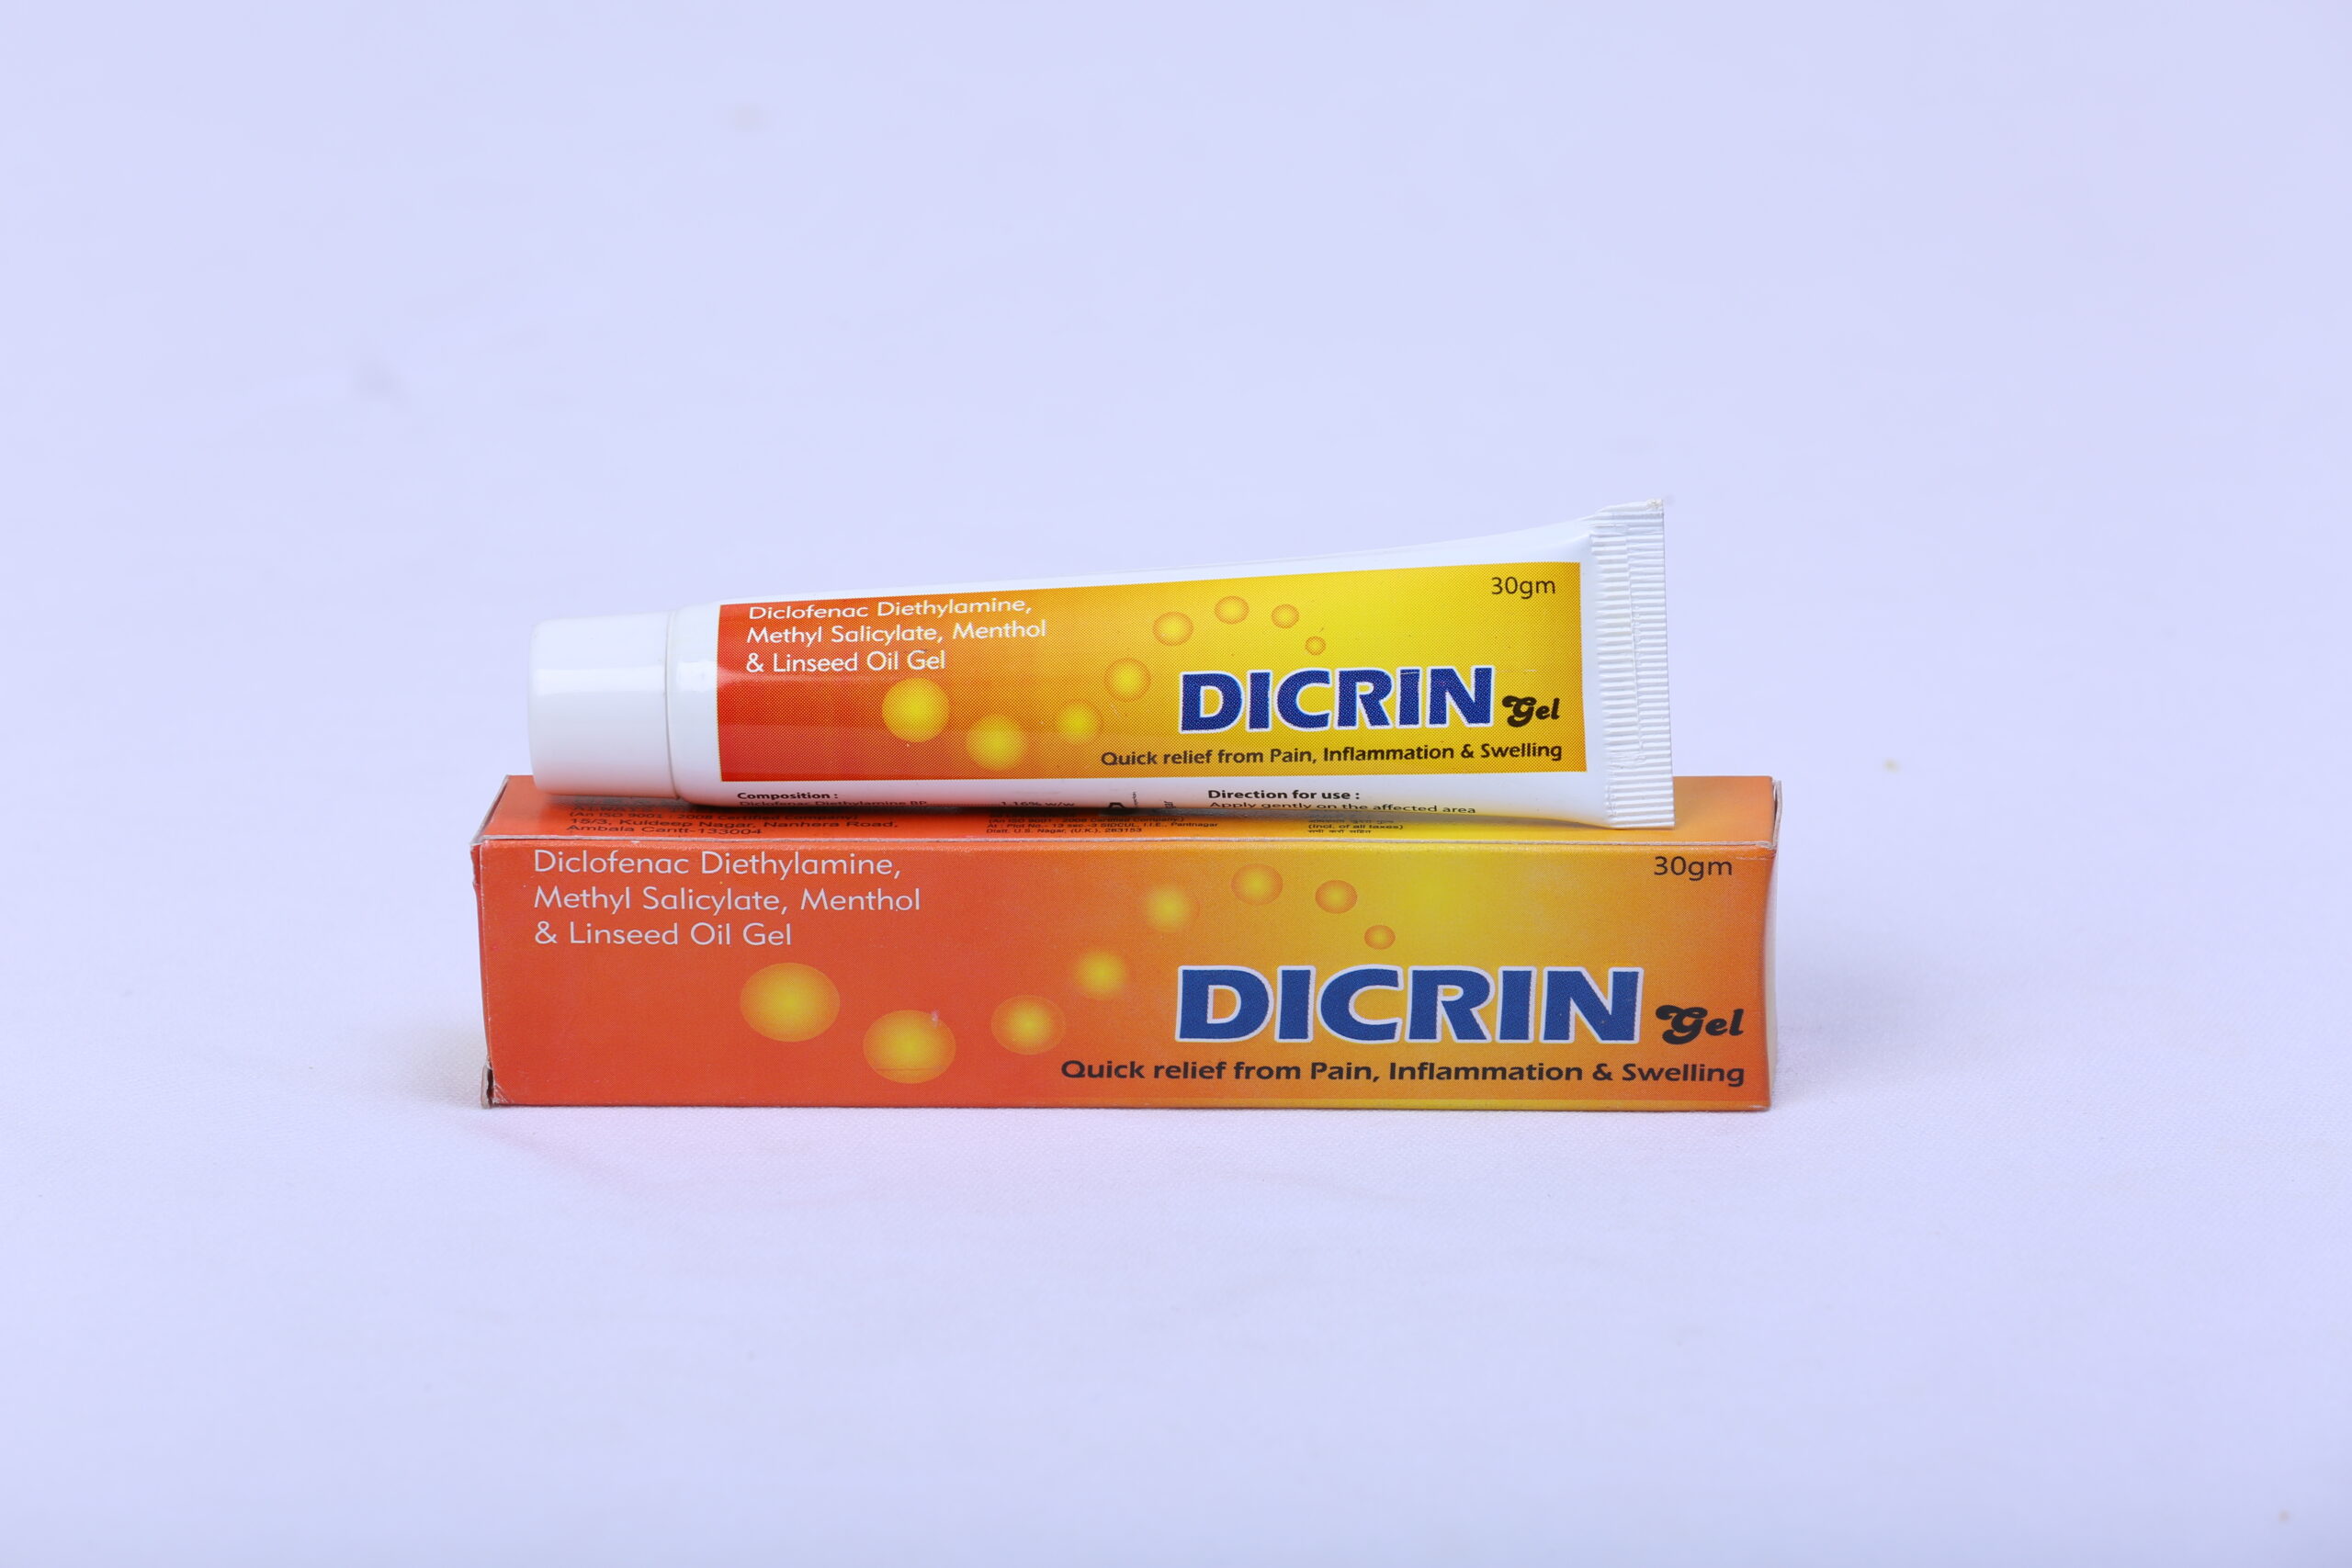 DICRIN GEL (Diclofenac Diethylamine,methyl salicylate,menthol & linseed oil gel)